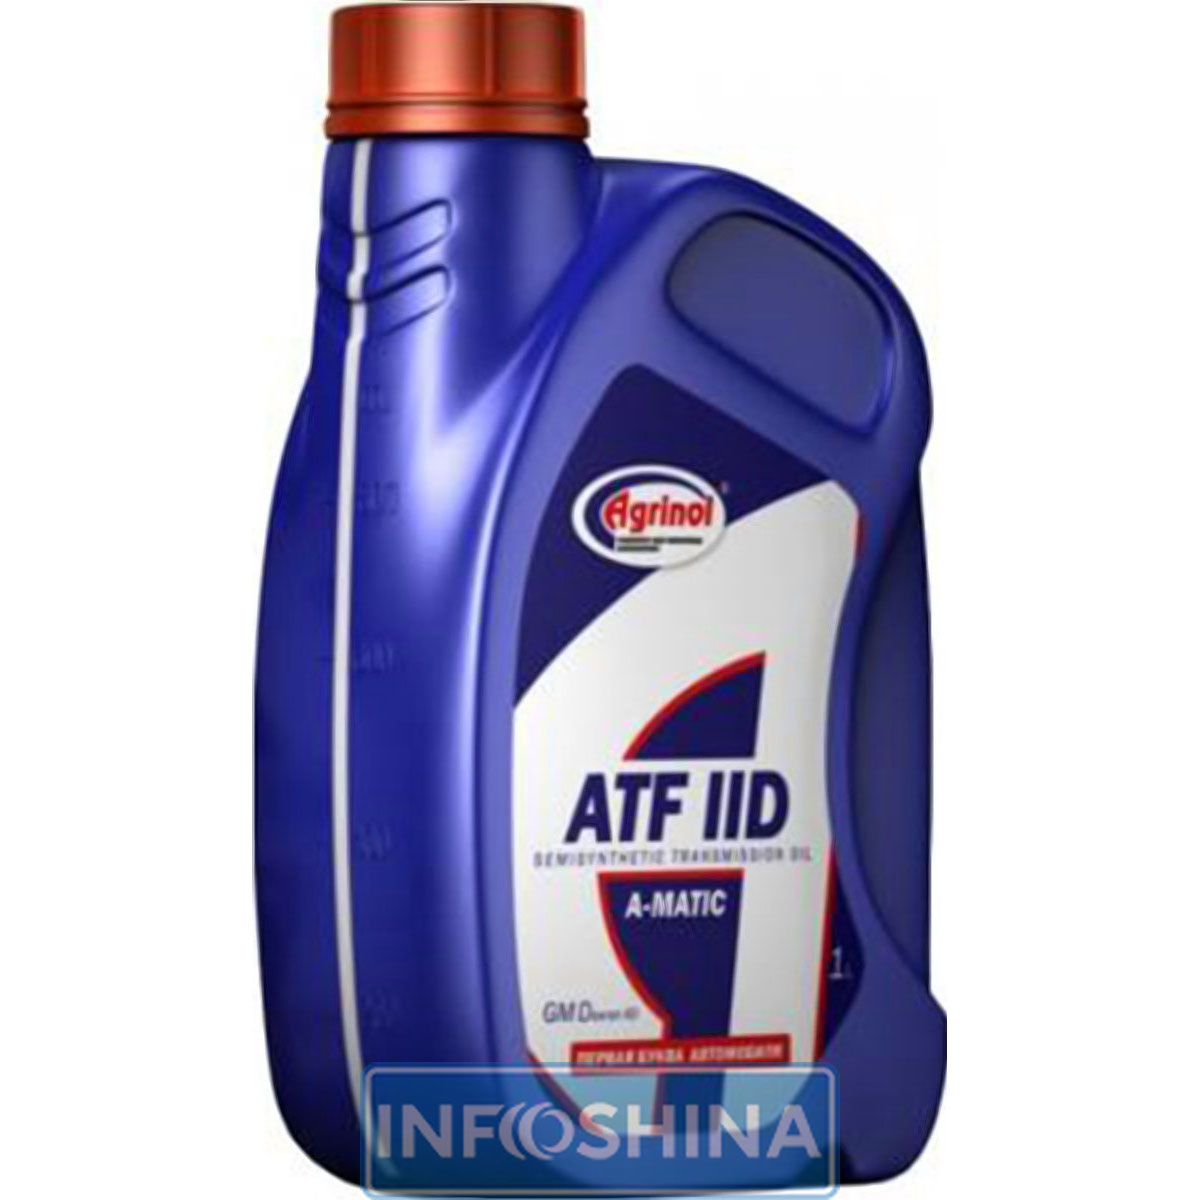 Agrinol ATF IID